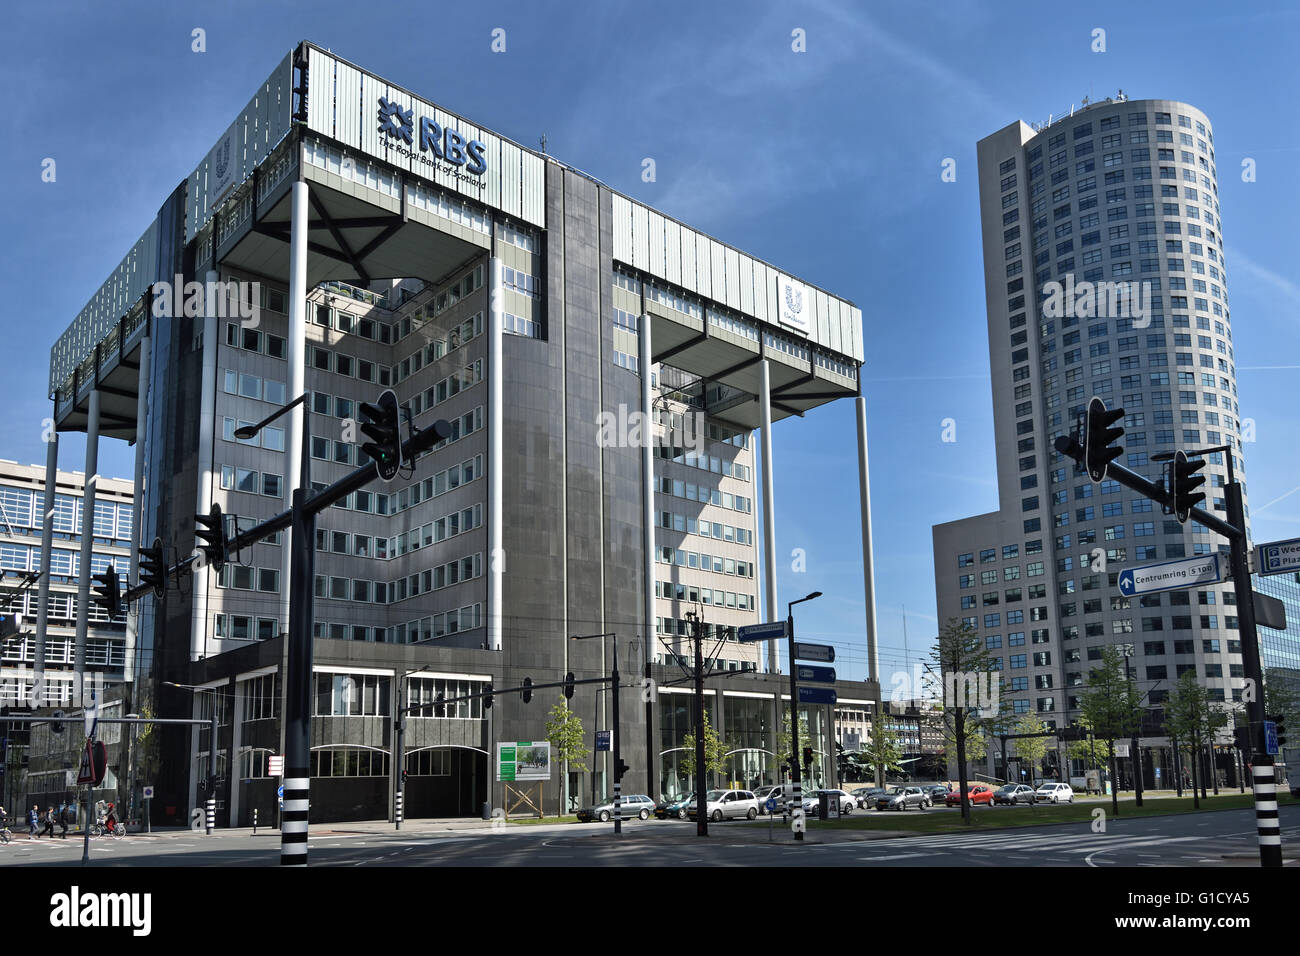 RBS Royal Bank of Scotland et Unilever Deftse Poort Pays-bas ville néerlandaise de Rotterdam Weena, Ville Banque D'Images